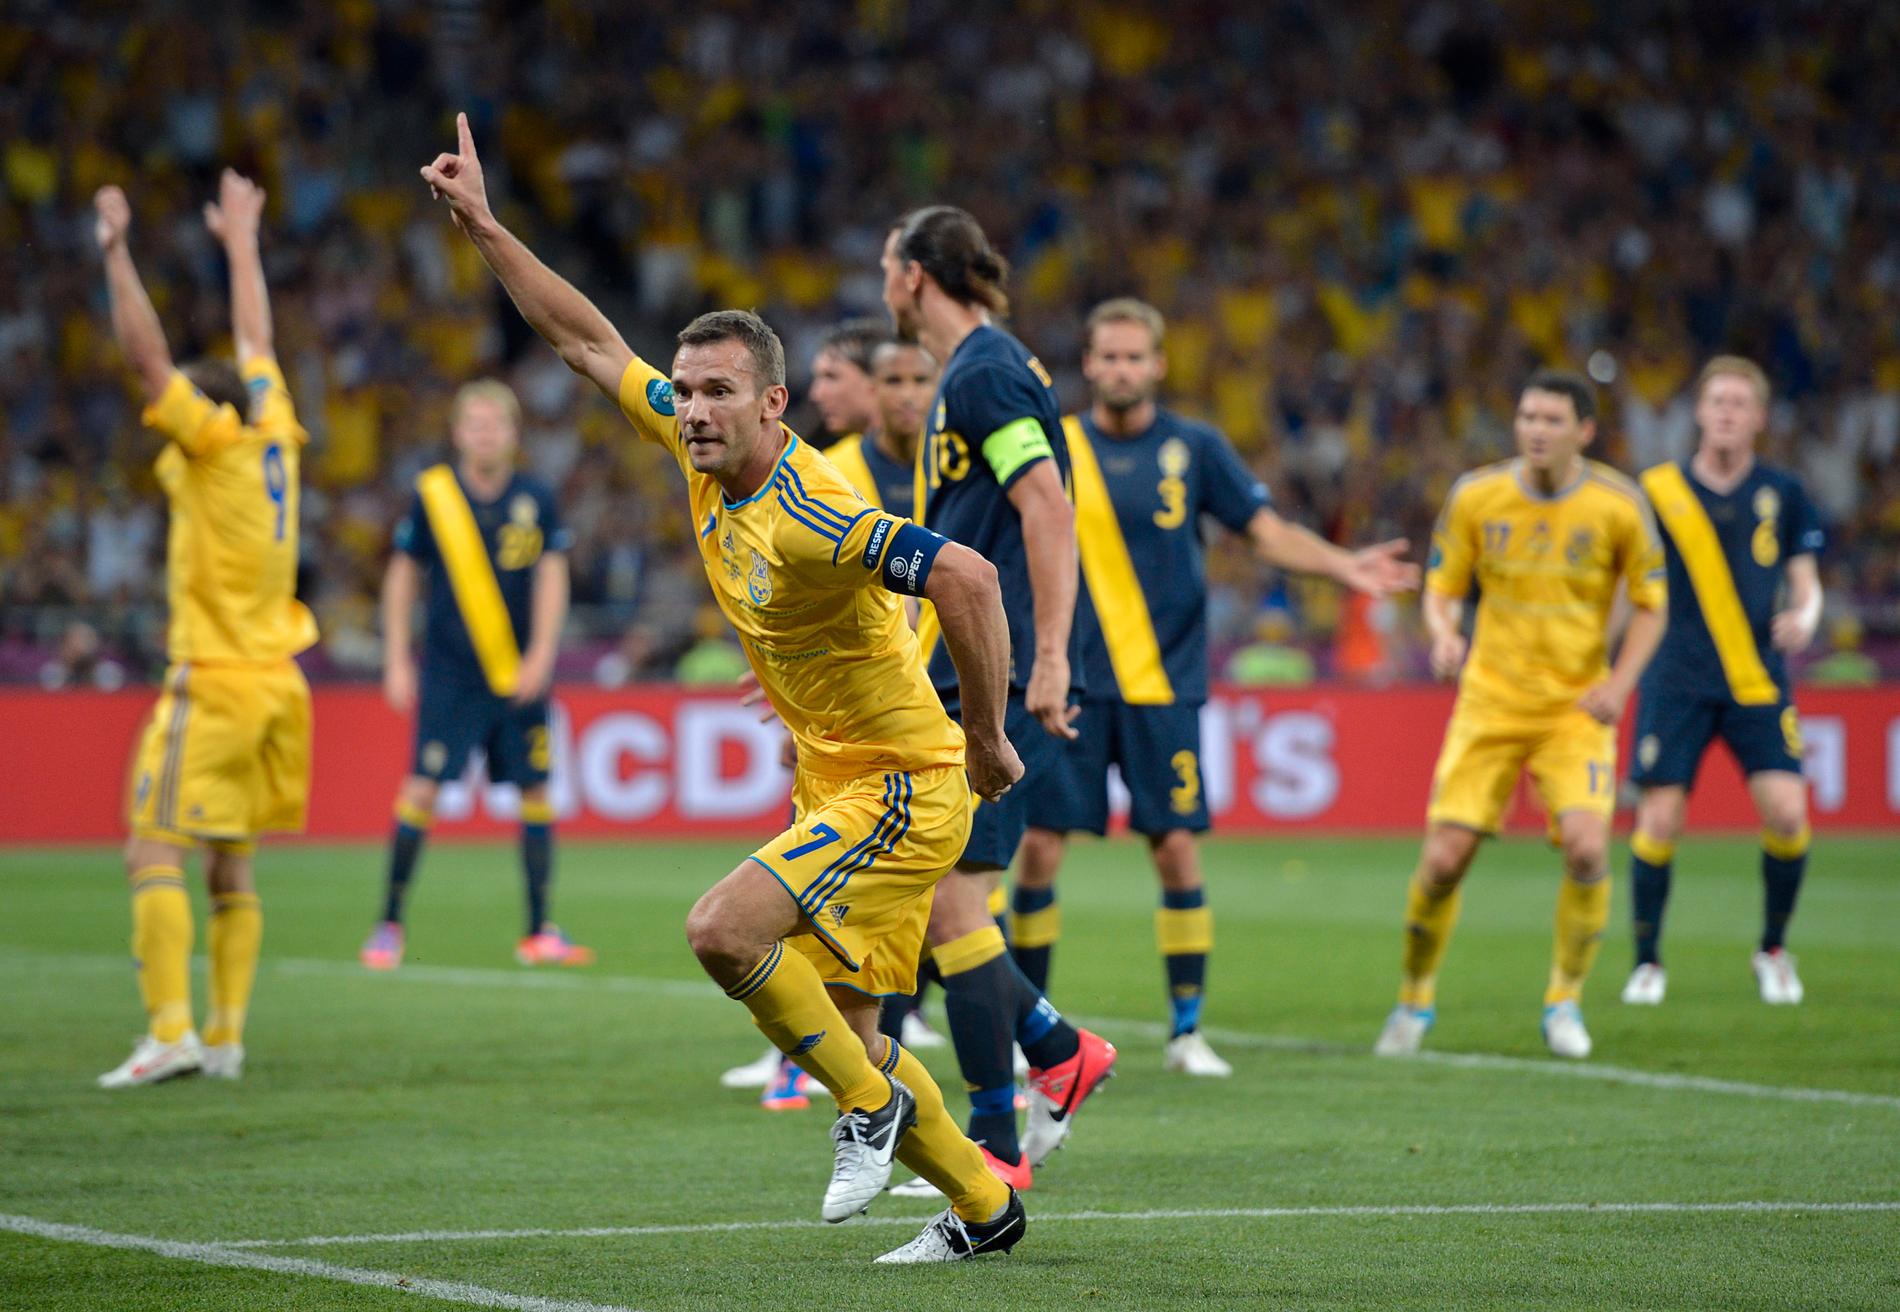 ”Matchen mot Sverige gav mig en av de vackraste och mest intensiva kvällarna i mitt liv”, säger Andrij Sjevtjenko.